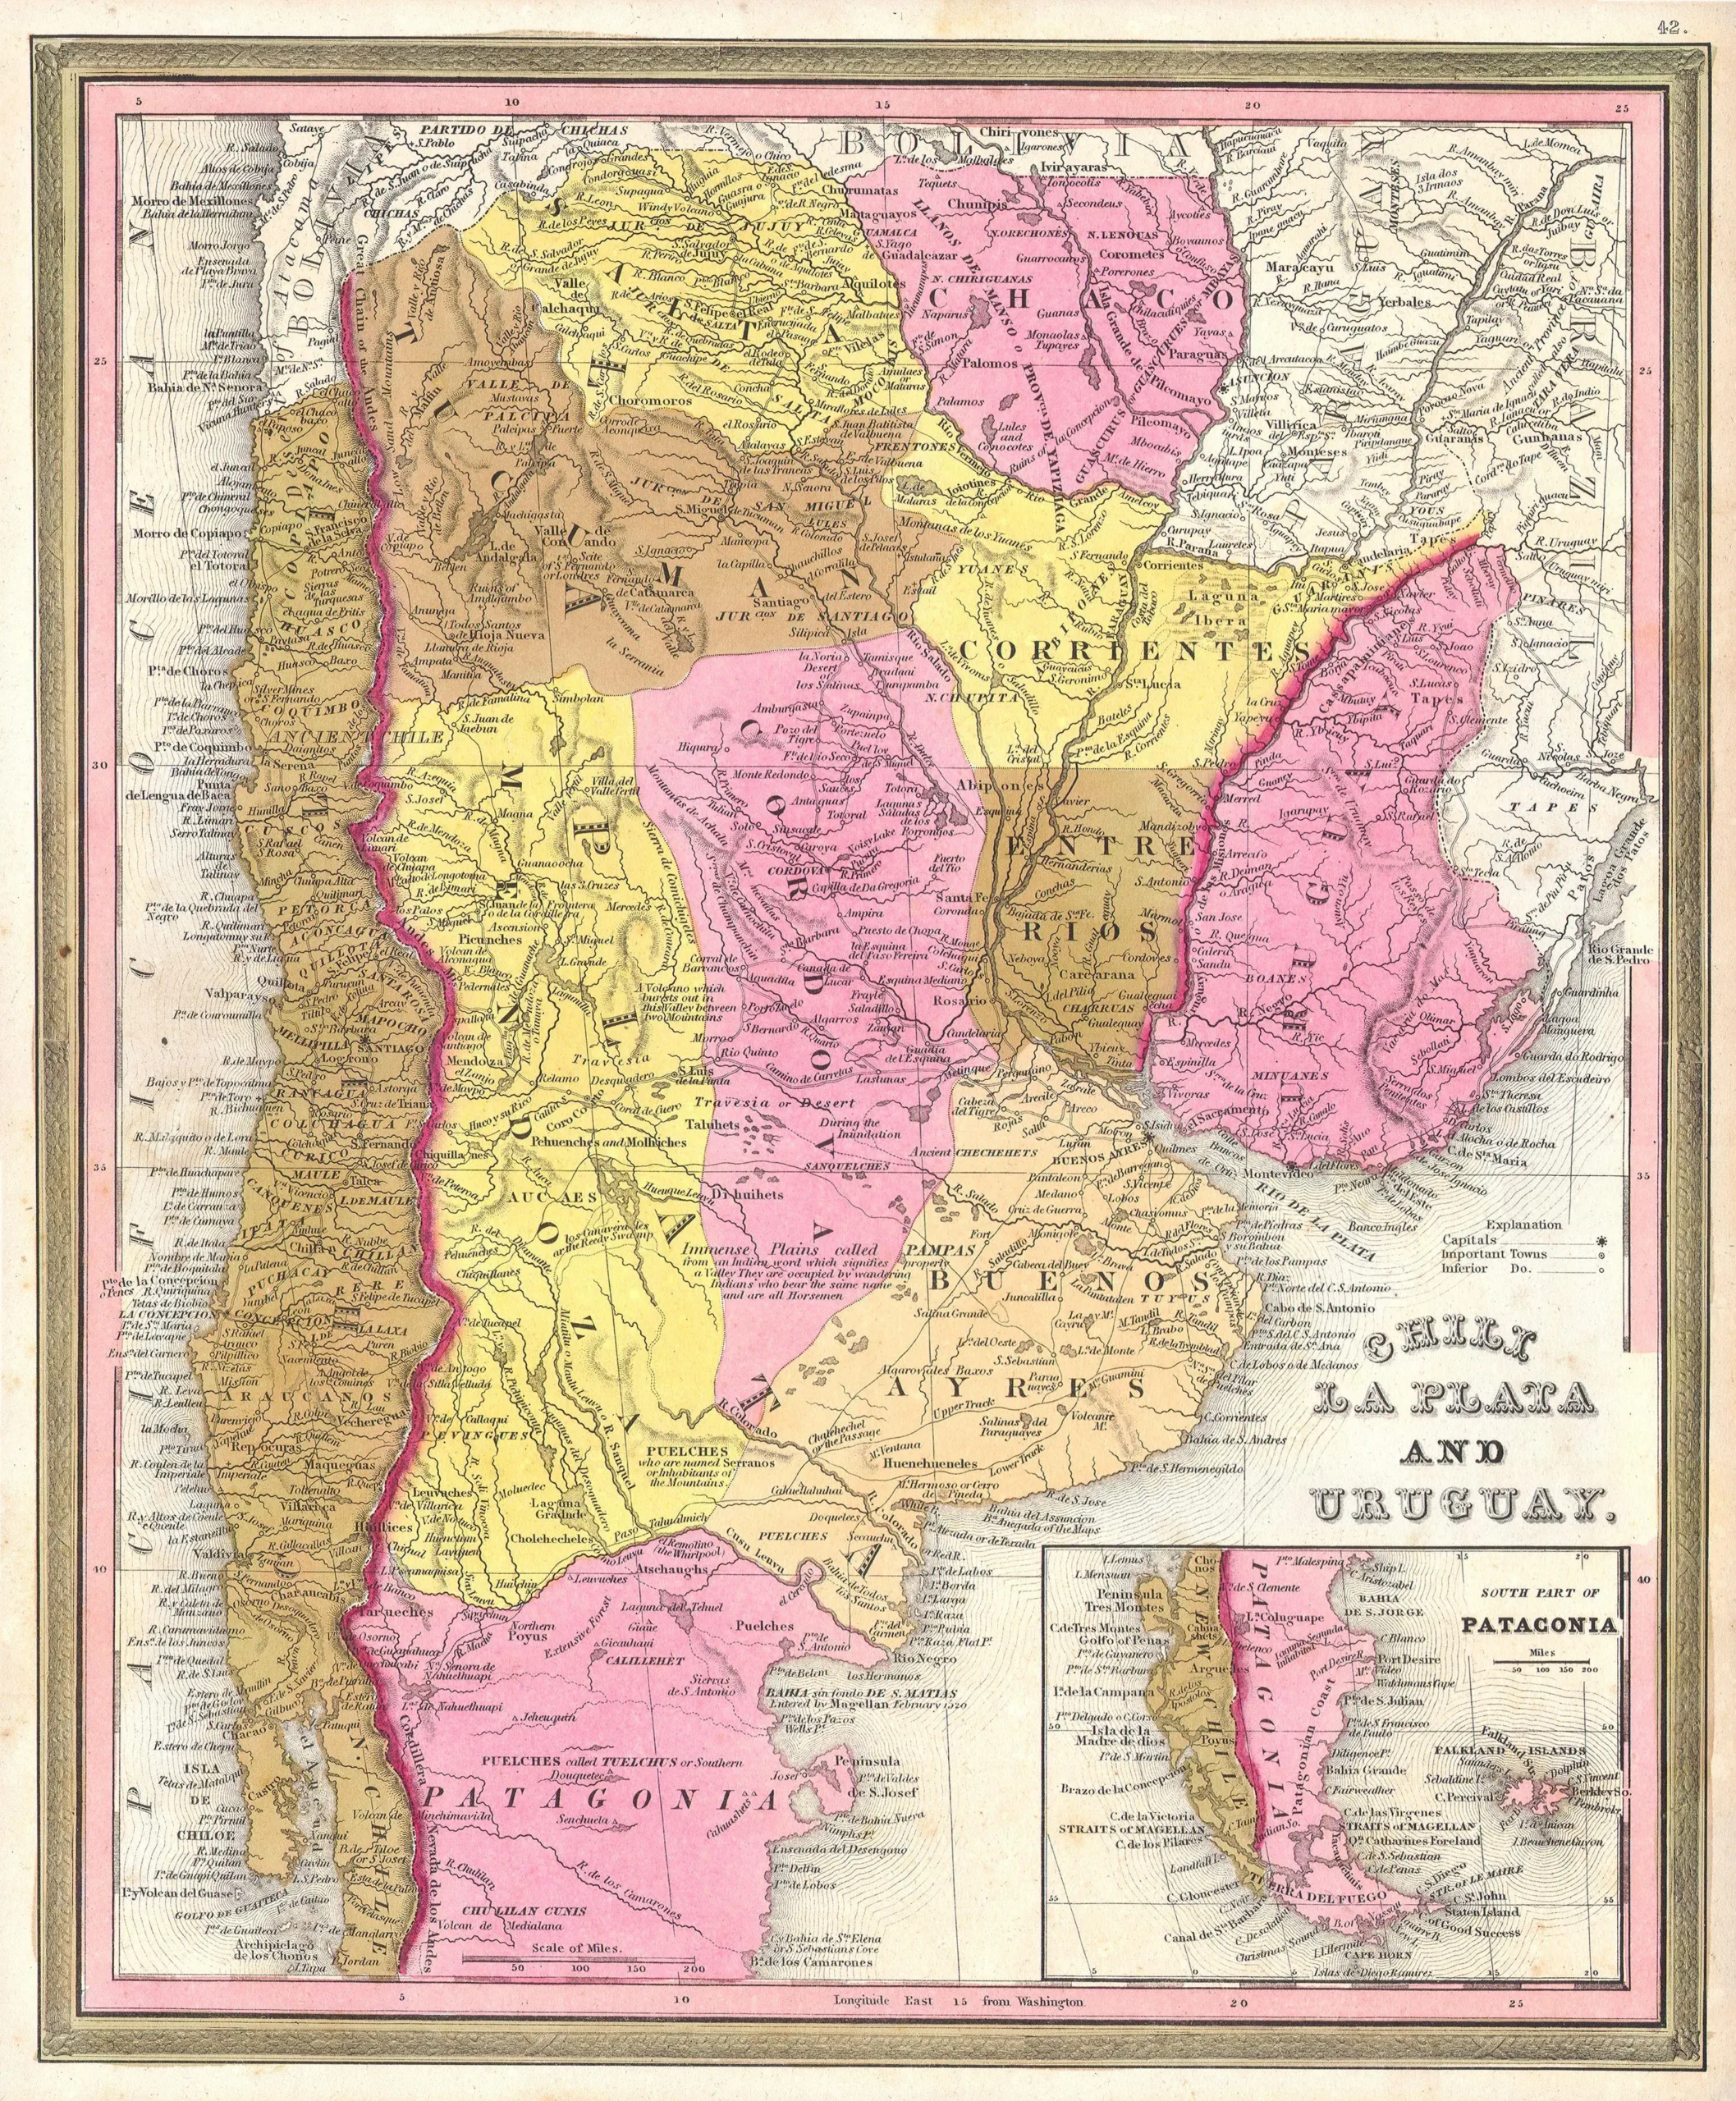 autonomías provinciales 1820 resumen - Que sucedió con las Provincias Unidas del Río de la Plata a partir de 1820